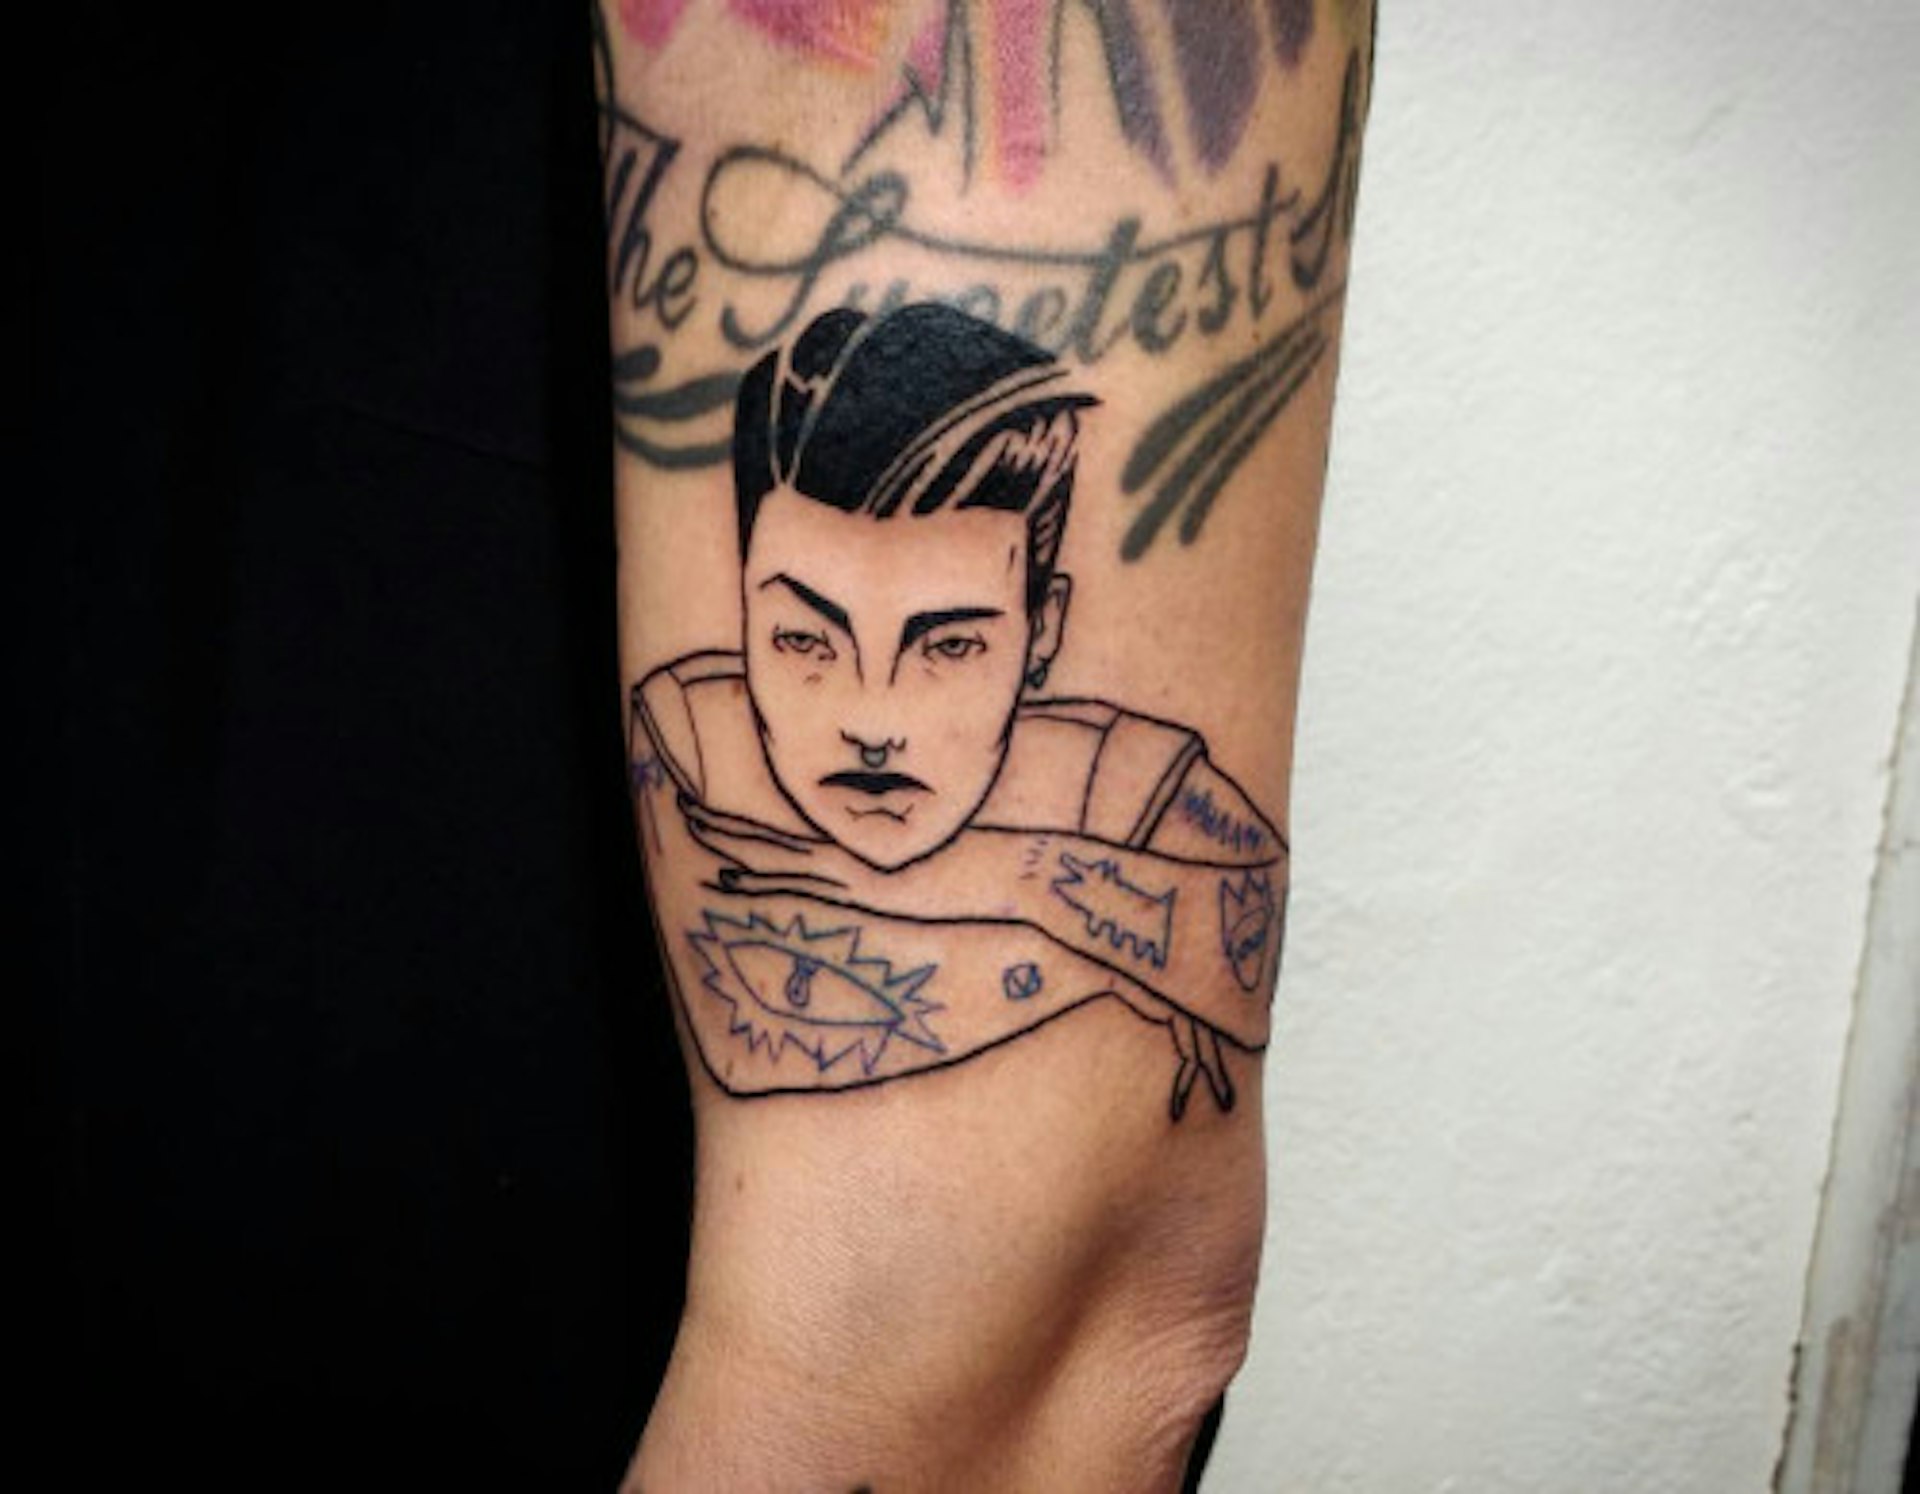 A tattoo design by Uve Rivera.